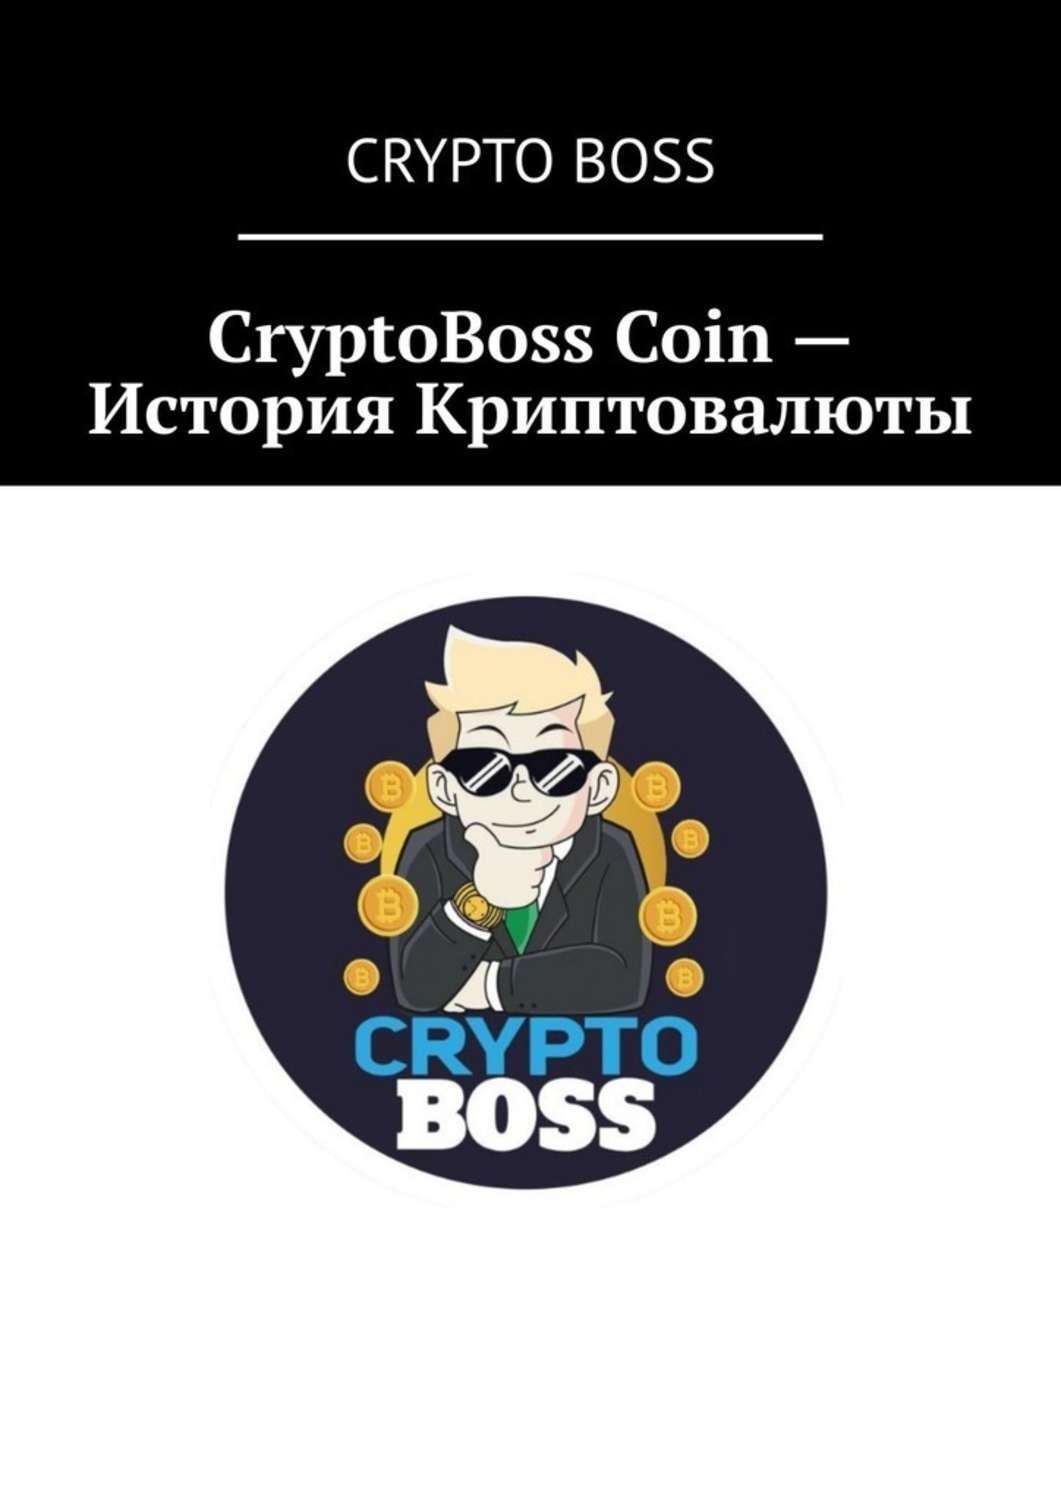 Cryptoboss casino бонус onlinecryptoboss. CRYPTOBOSS. Crypto Boss. Крипто книга. Фото крипто бос.